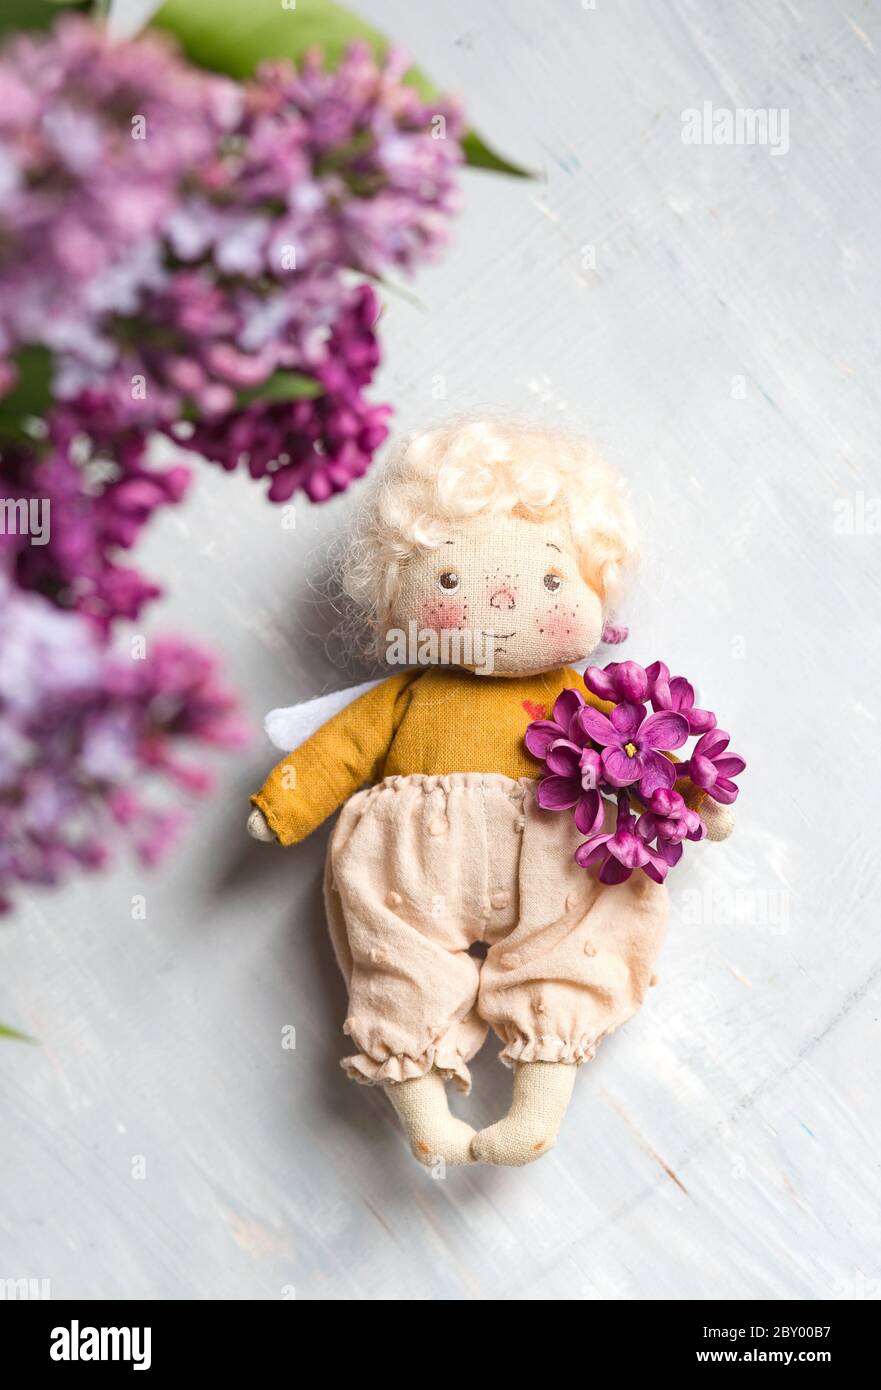 Kleiner goldhaariger Engel in den blauen, rosa, lila, violetten lila Blüten. Handgemachtes Spielzeug in violetten Flieder Farben. Stockfoto